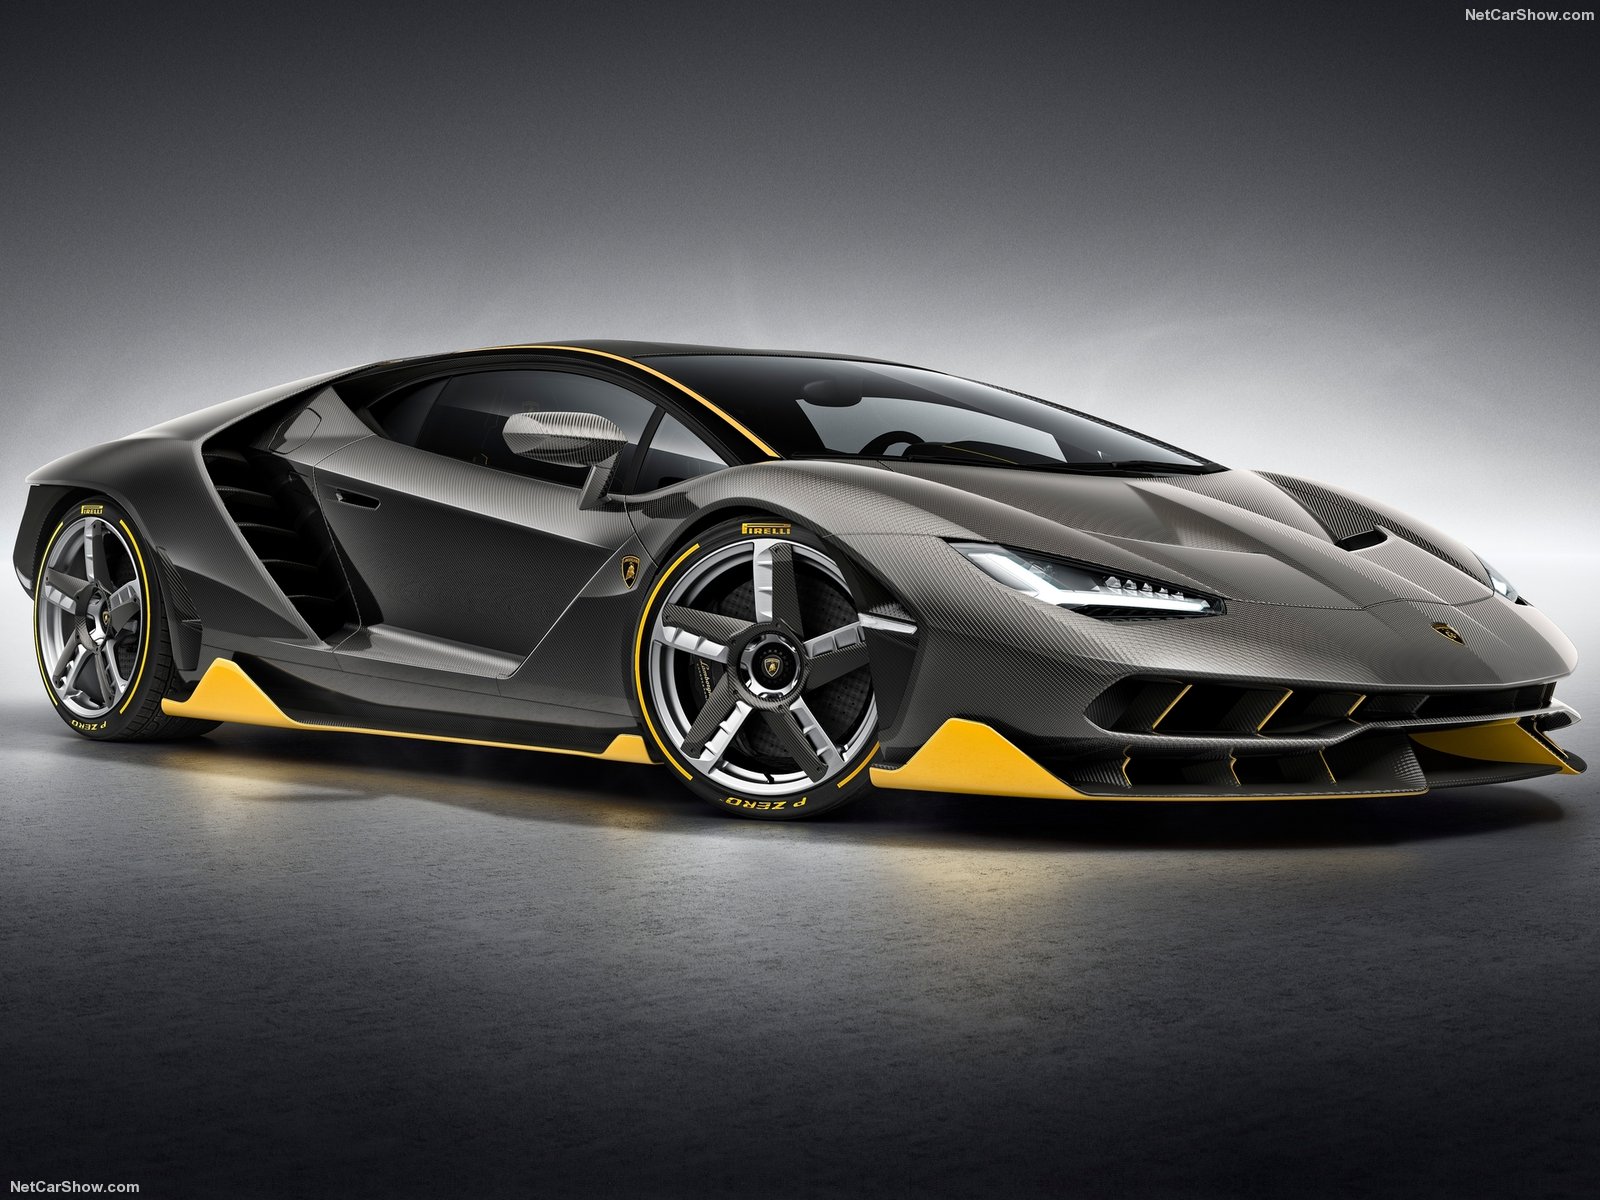 1:18 Scale Lamborghini Centenario LP770-4 by AUTOart Coming Soon – xDiecast